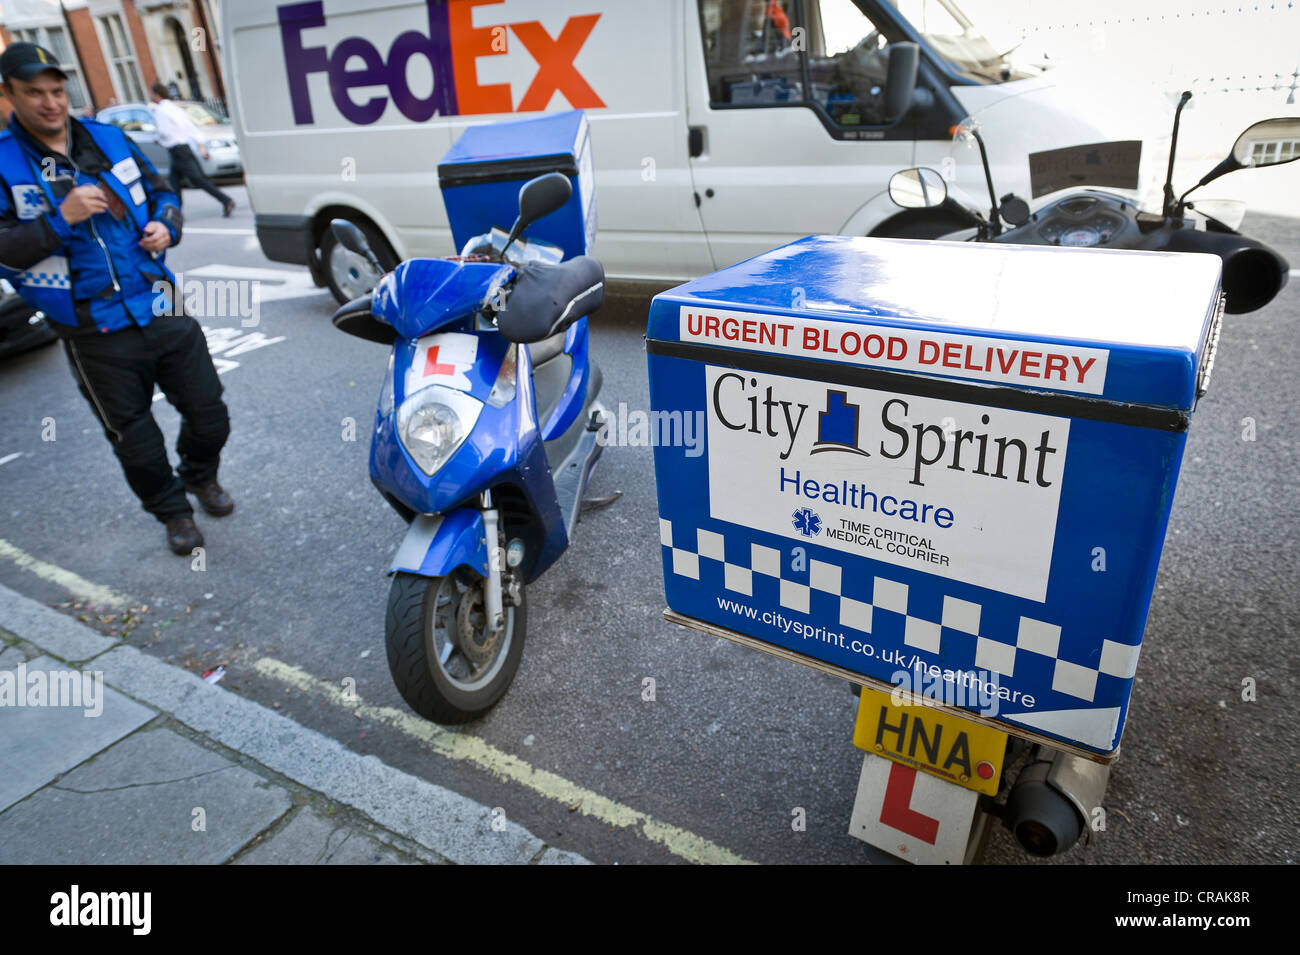 Driver Fed-Ex, motociclo con contenitore per unità di sangue, Marylebone, London, England, Regno Unito, Europa Foto Stock